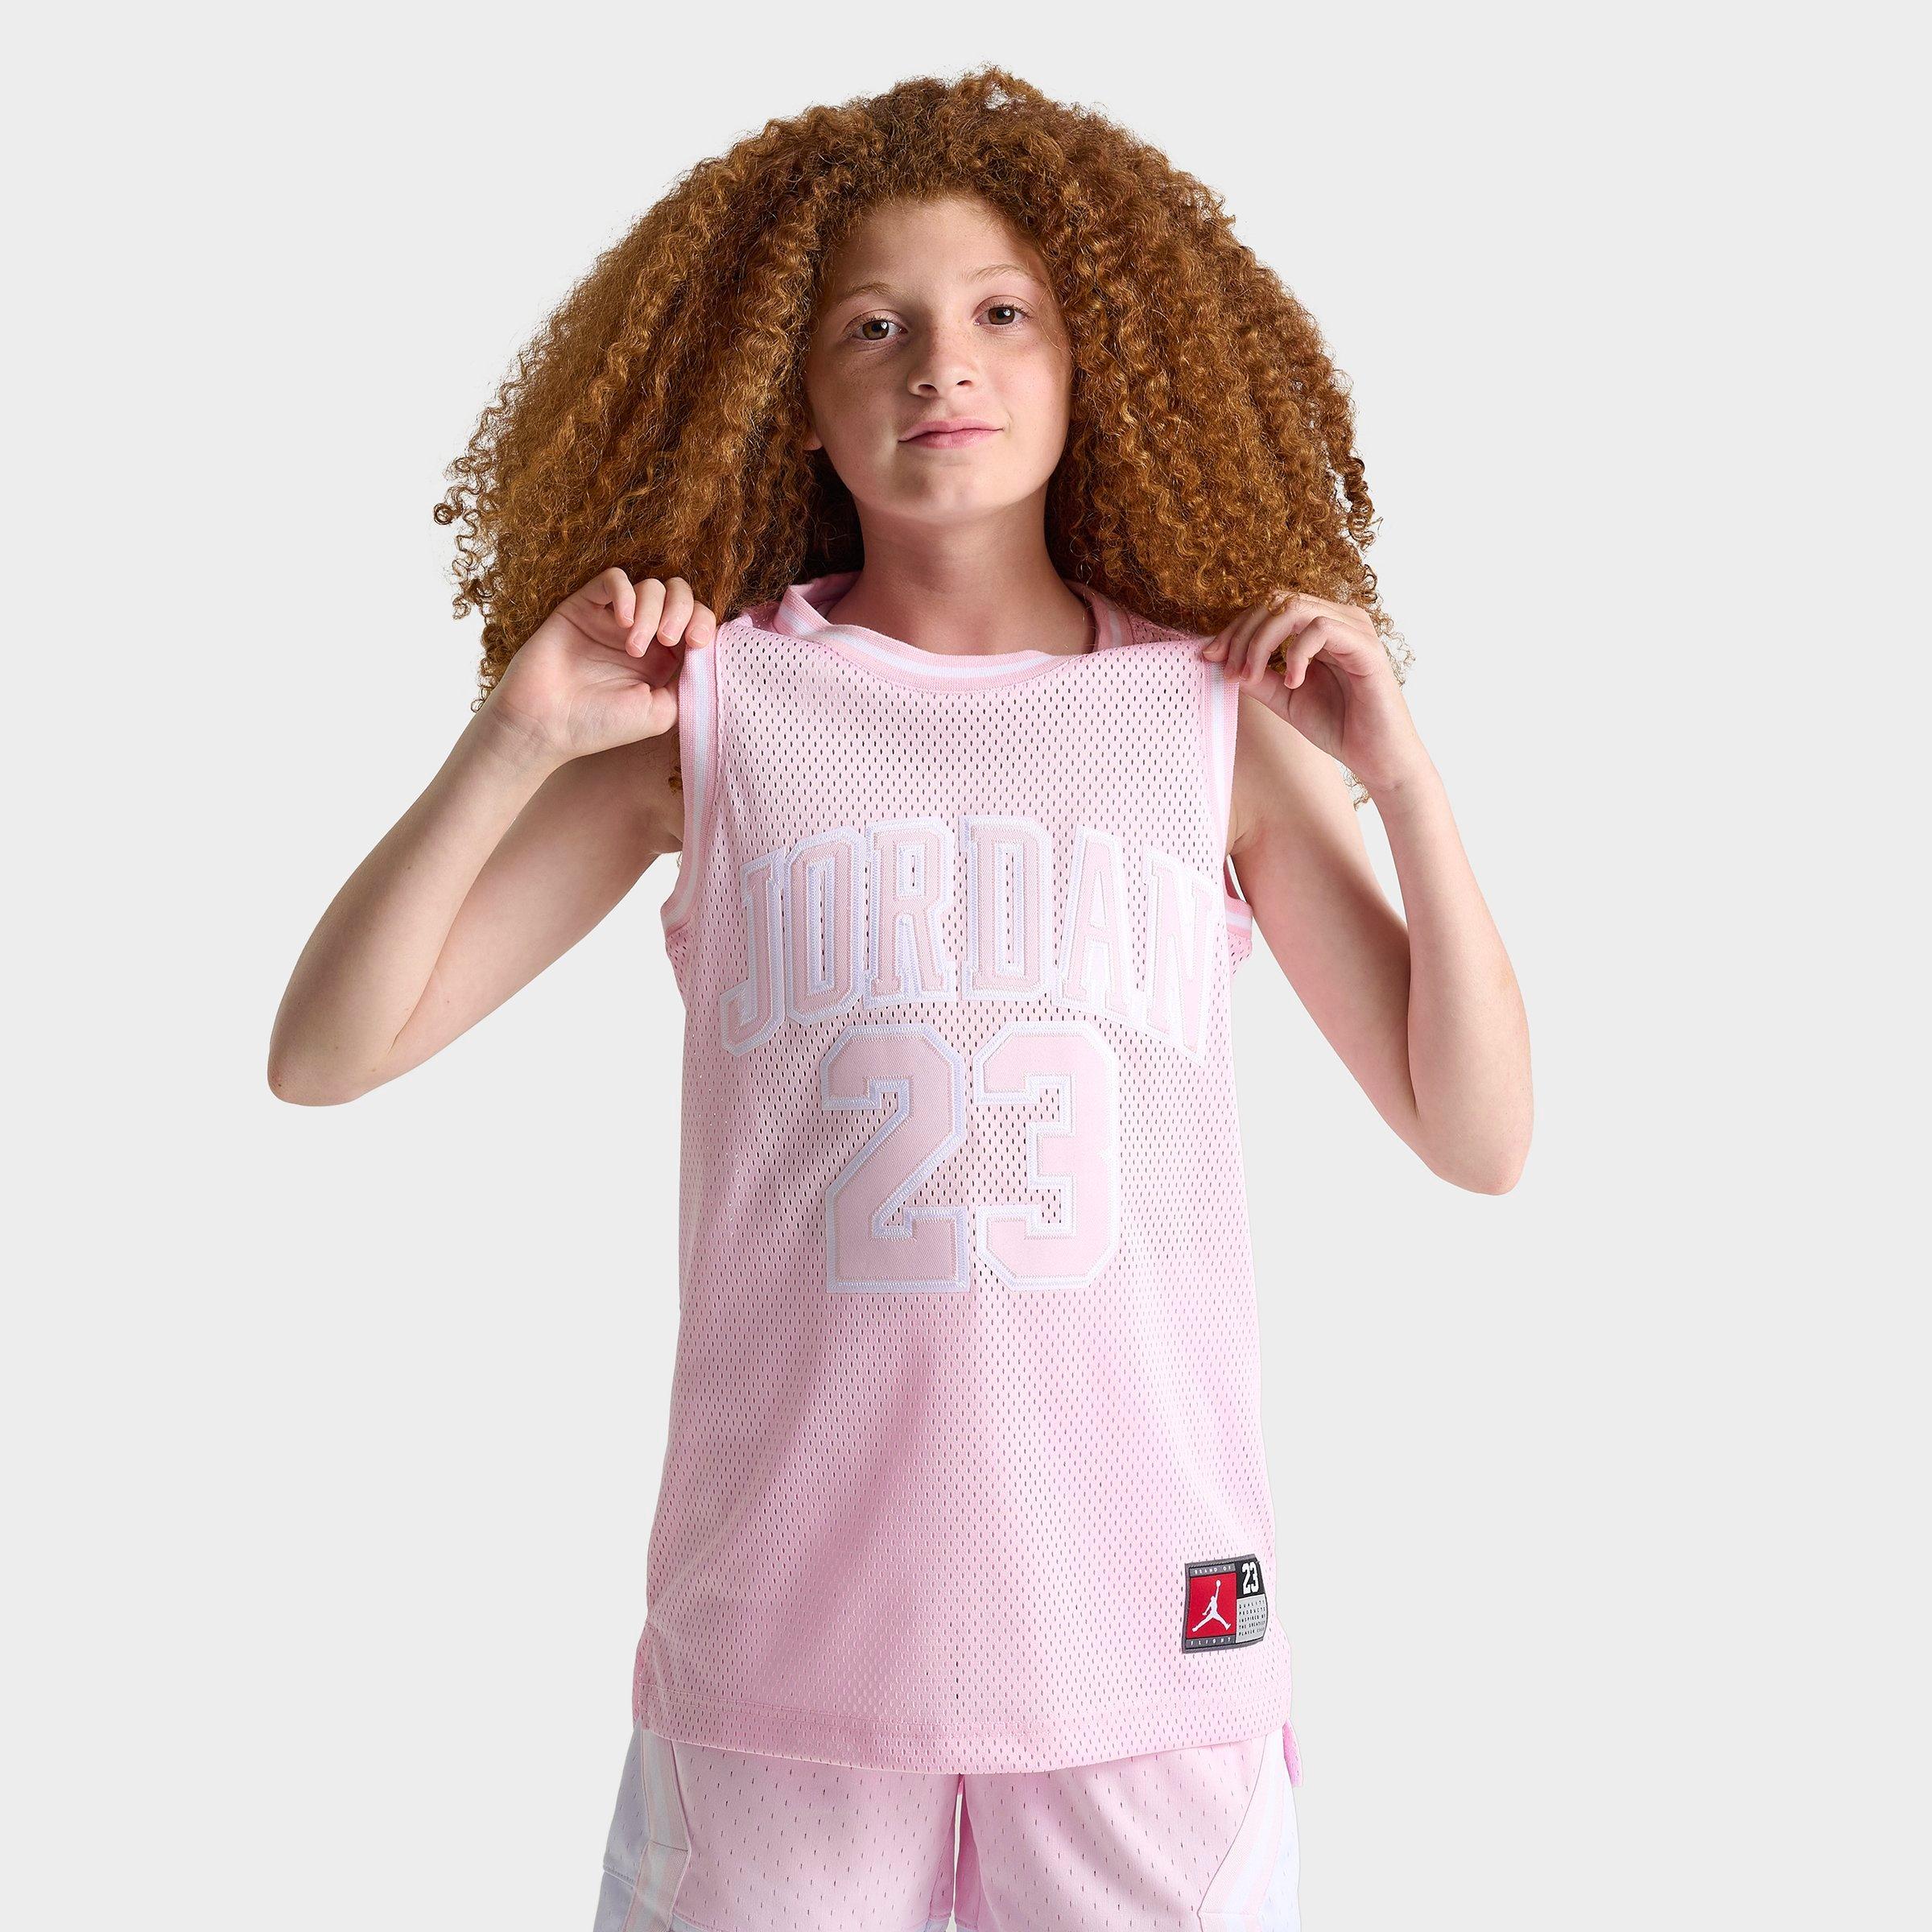 Nike Kids' Jordan Girls' 23 Jersey In Pink